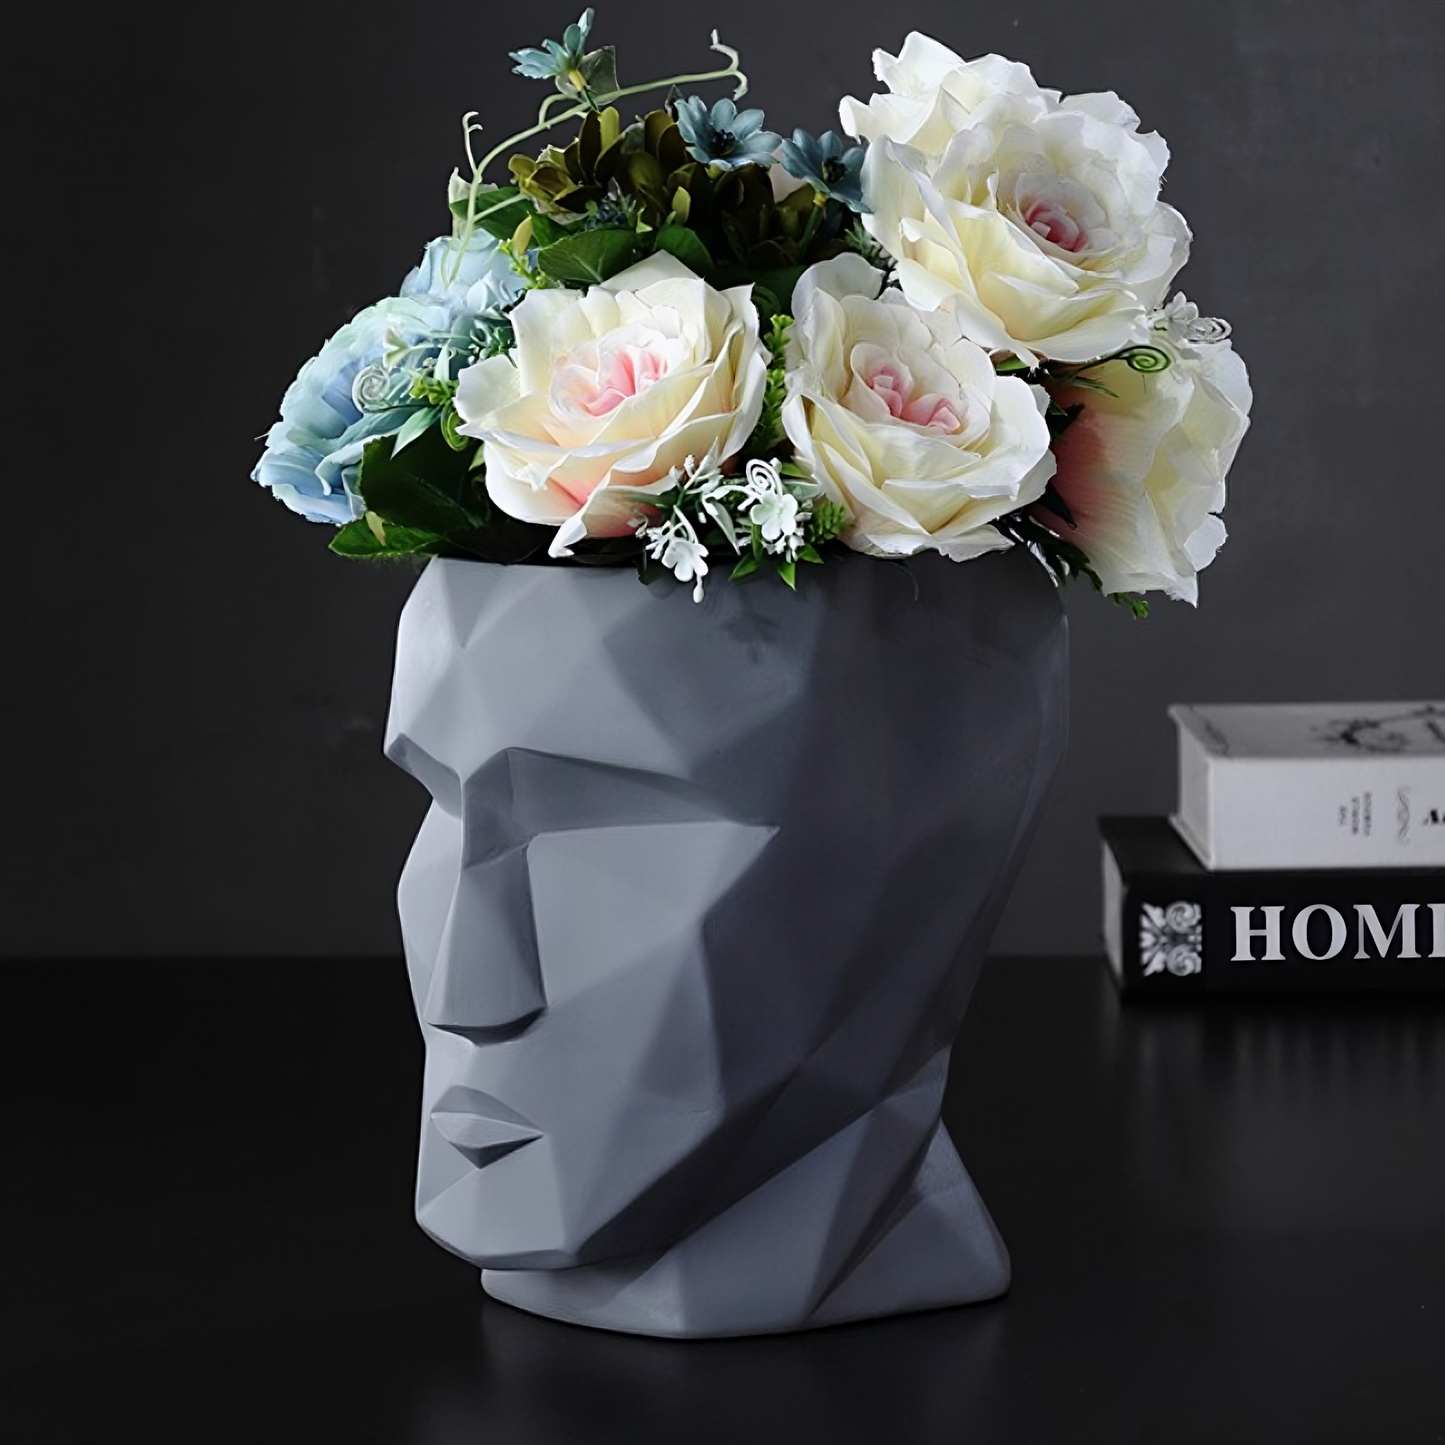 Modello singolo di "Vaso a forma di viso geometrico in stile moderno"